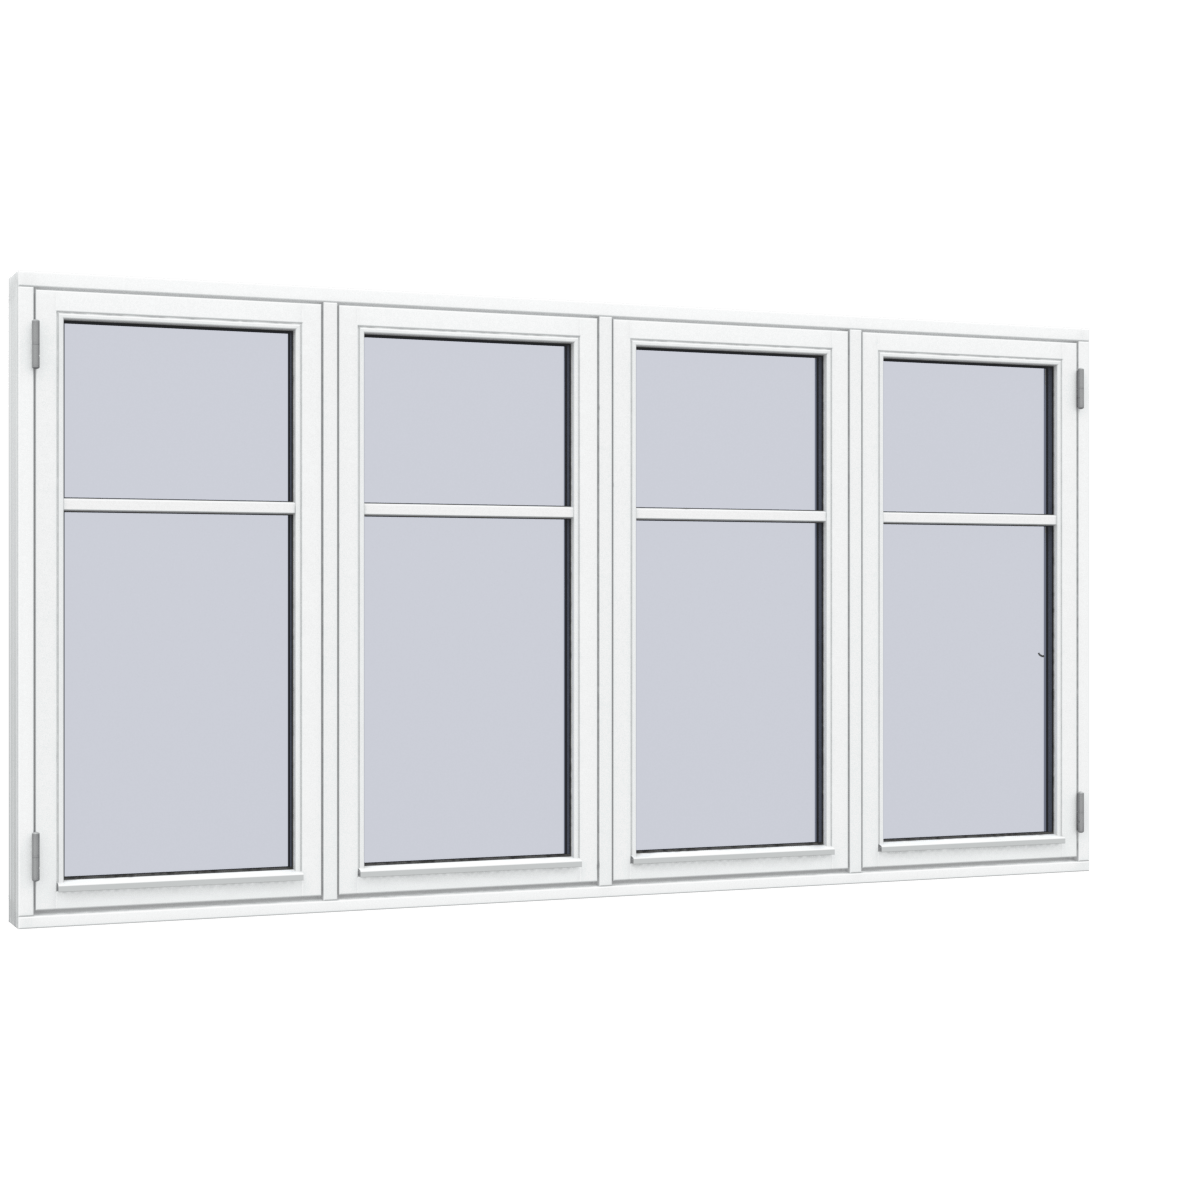 Warren Double glazed aluminium 3 tracks sliding window aluminum windows